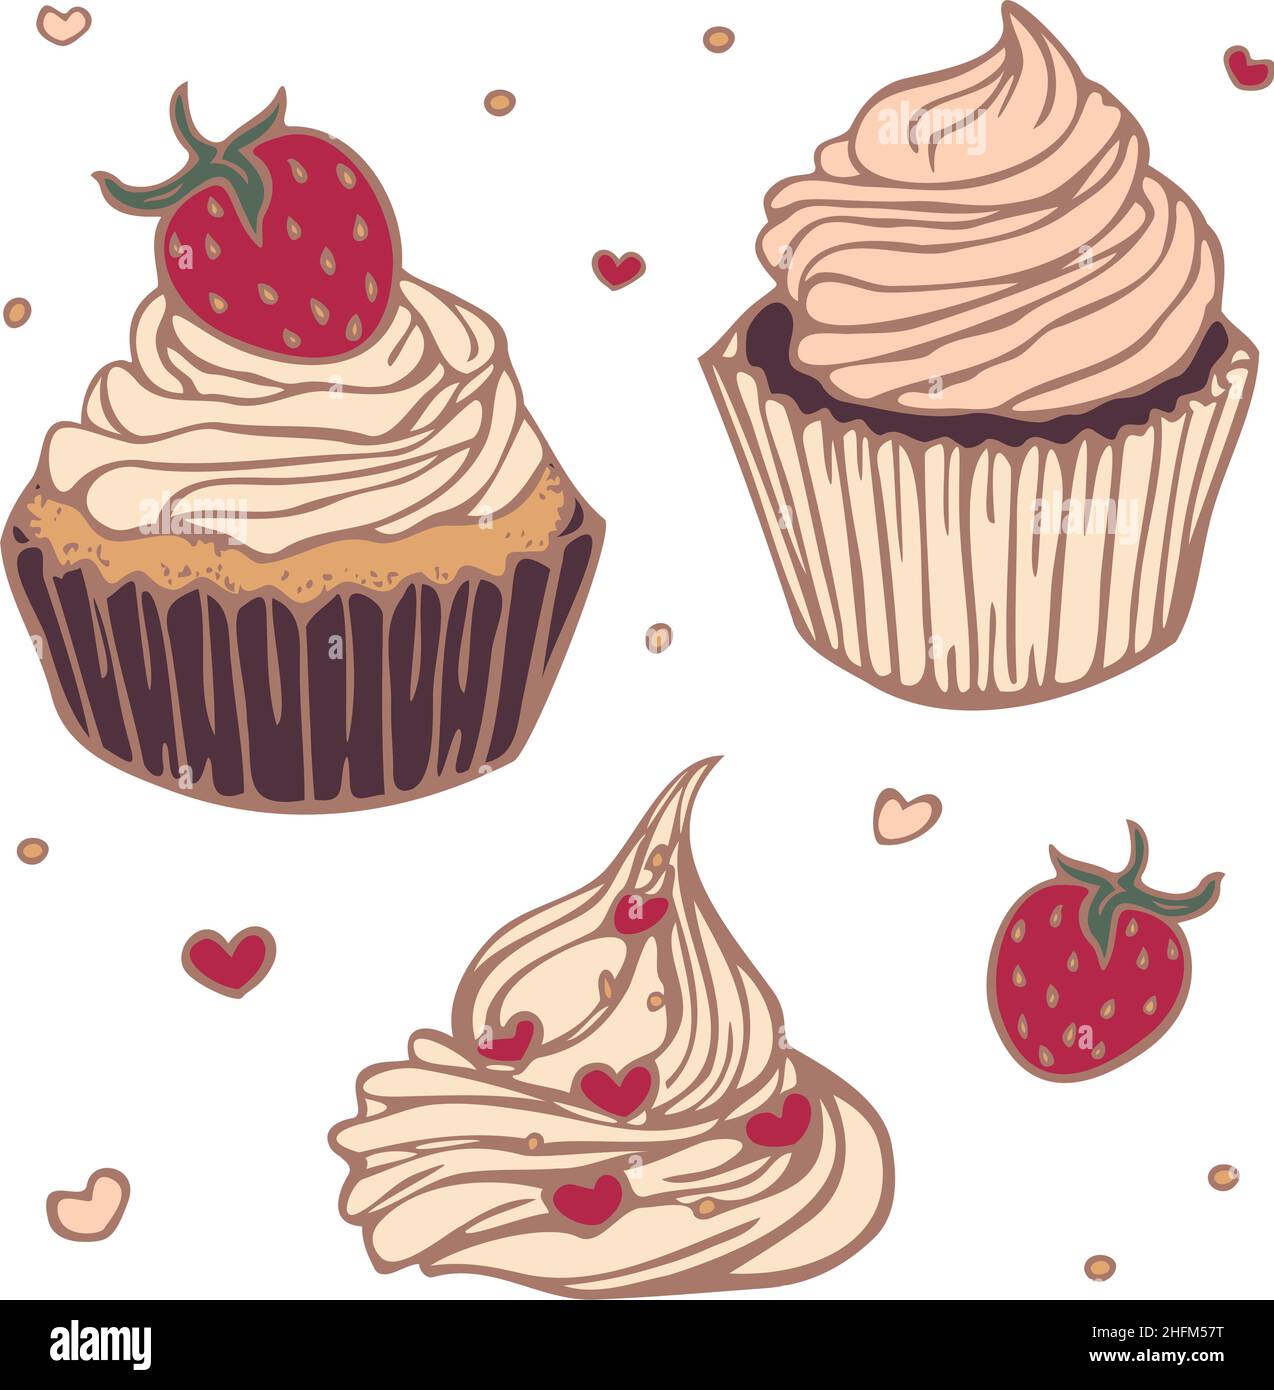 Vektor-Illustration mit Sammlung von Cupcakes farbig und dargestellt durch eine Linie. Handgezeichnete, isolierte Cupcakes. Stock Vektor